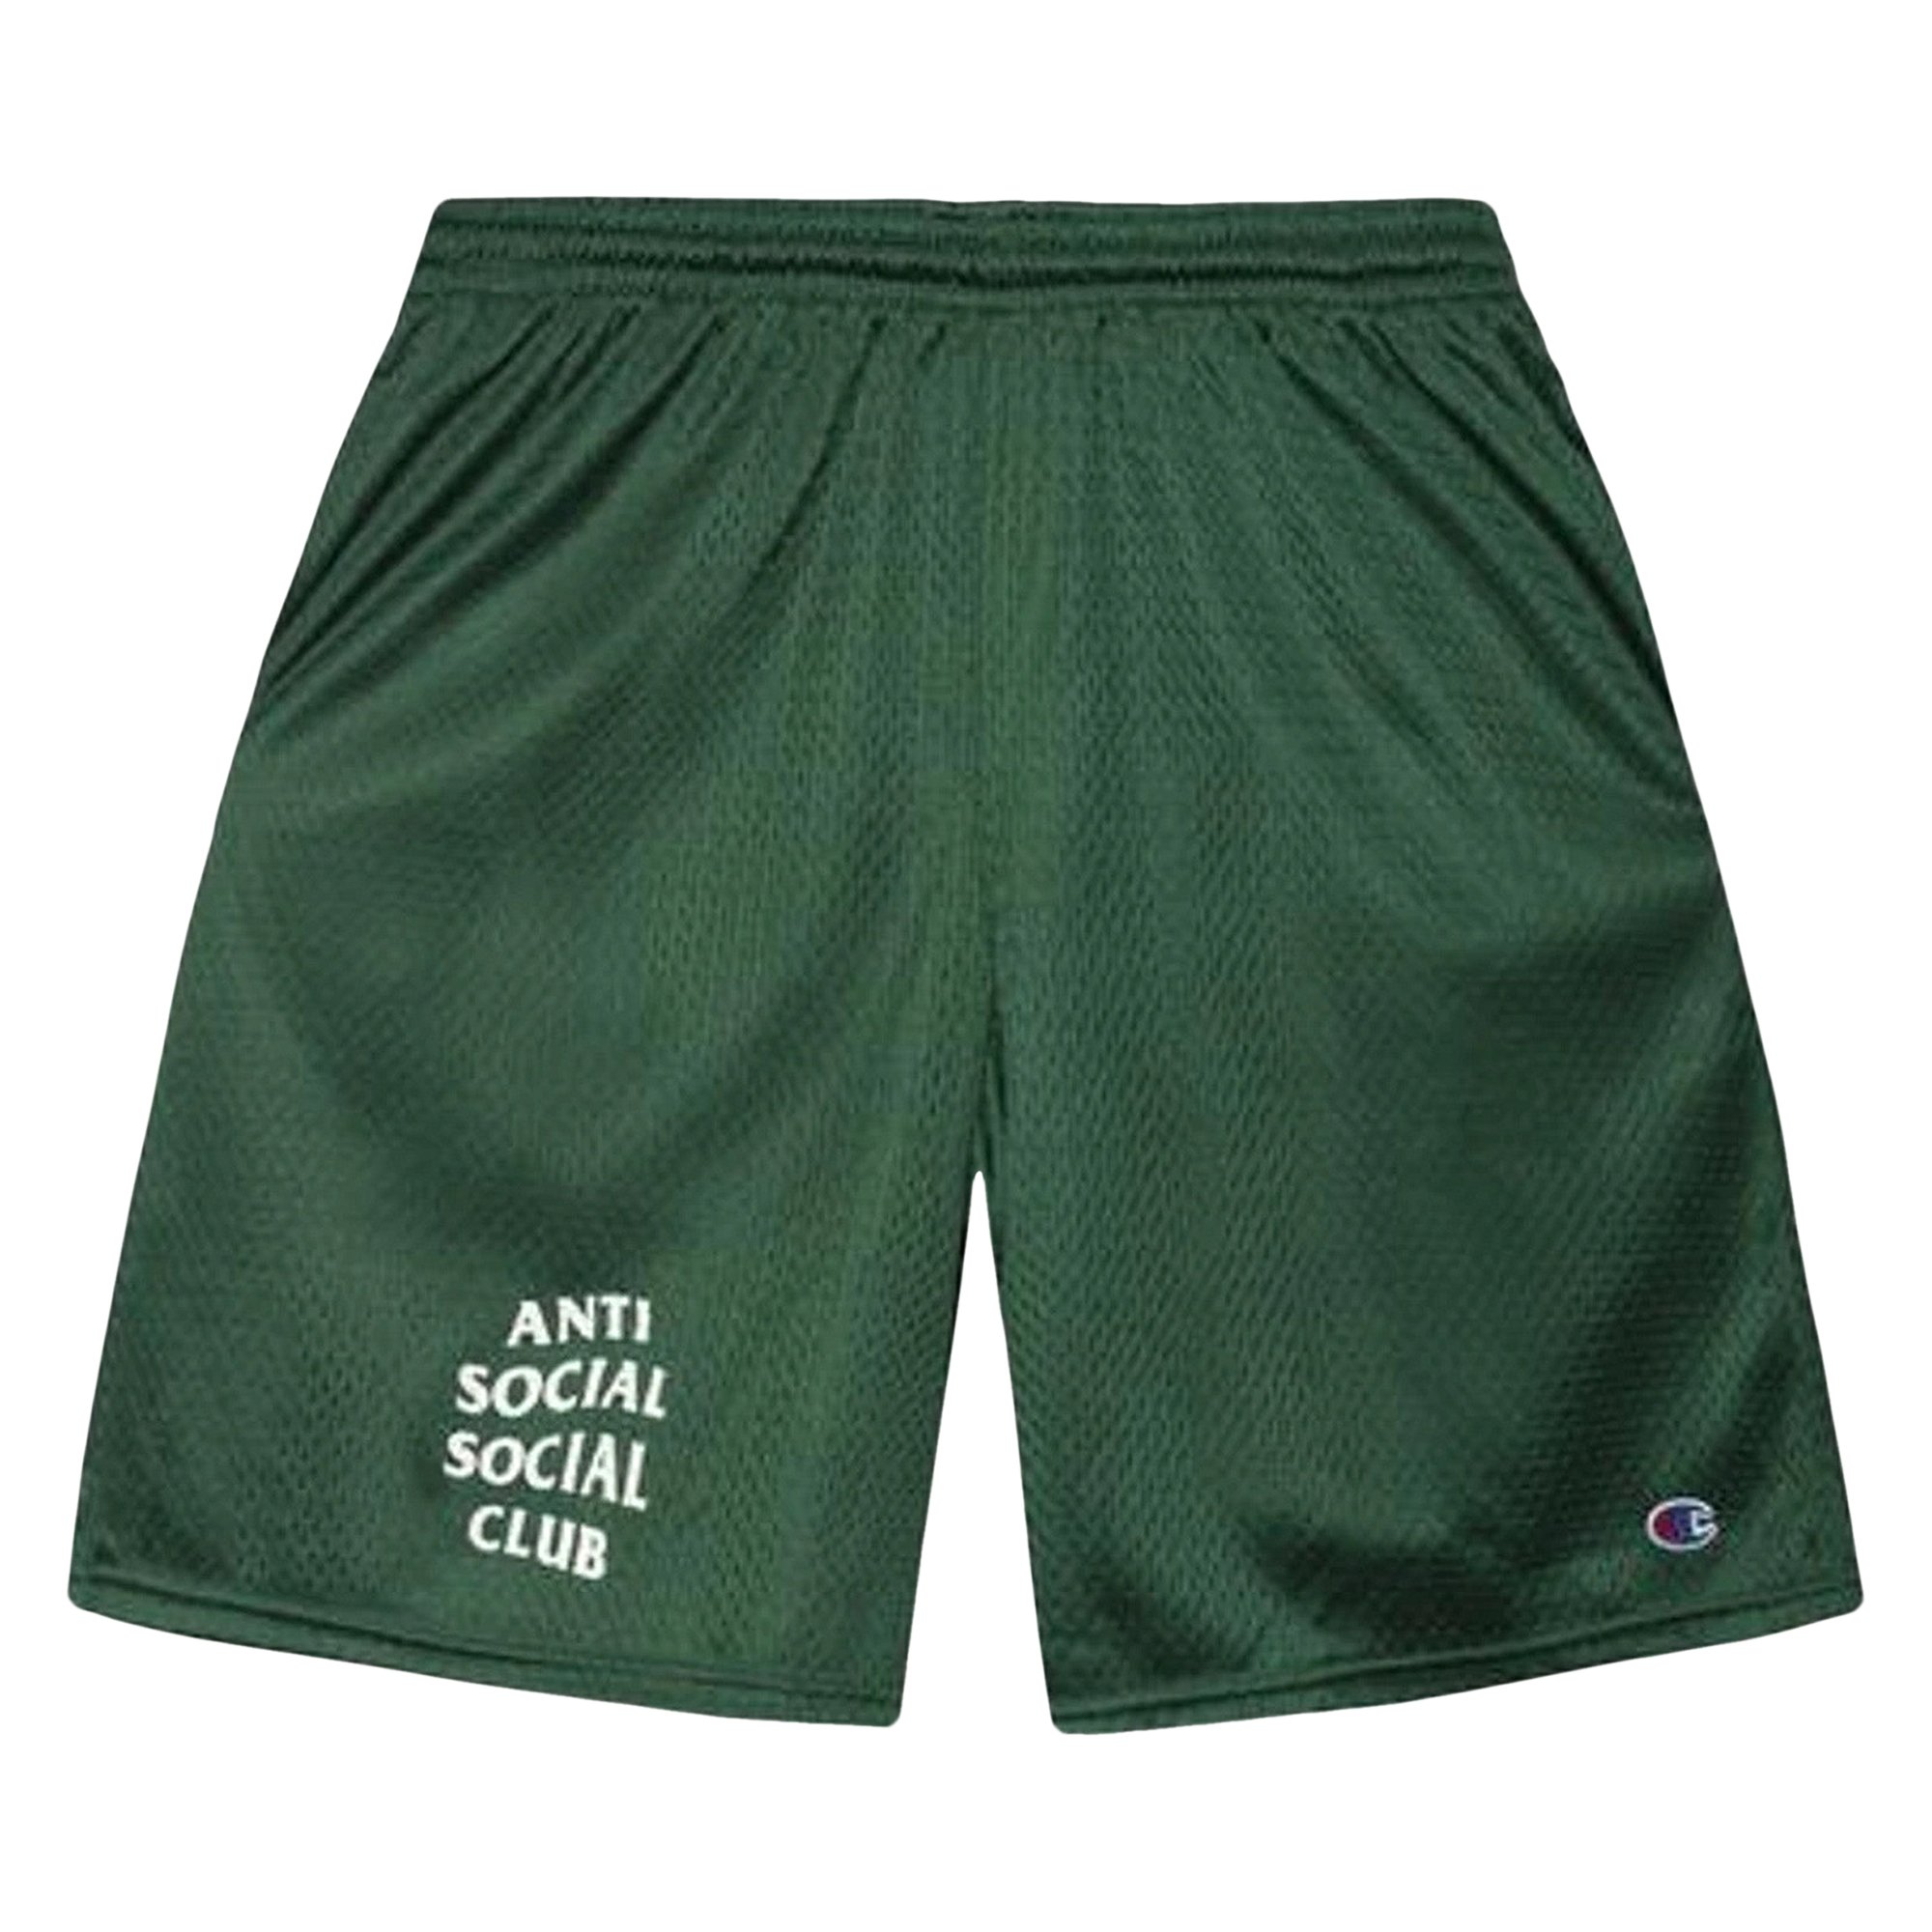 Спортивные шорты Anti Social Social Club, зеленые